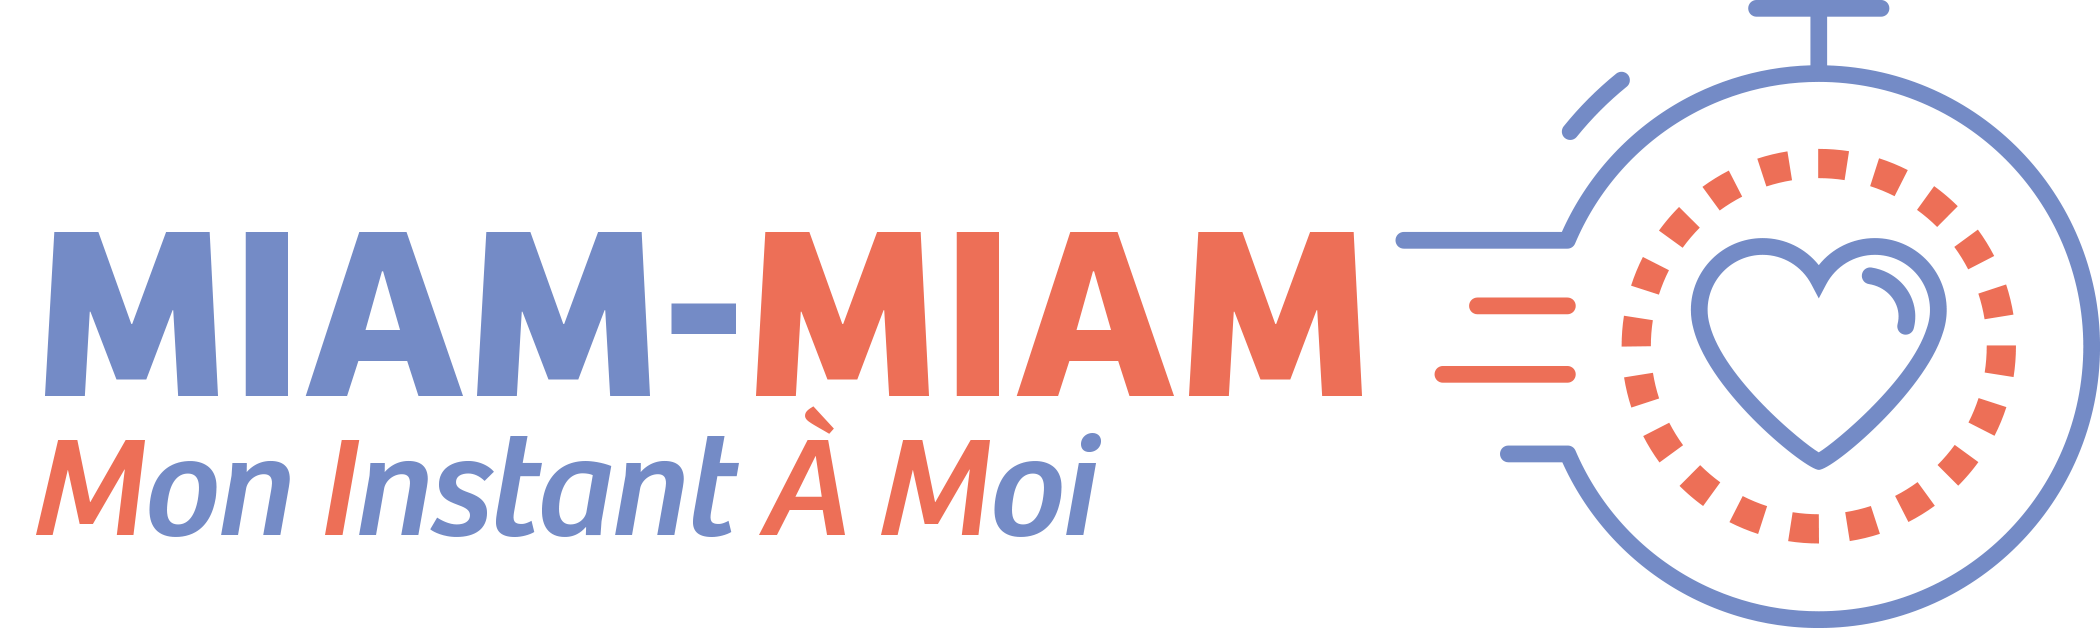 Logo Miam miam 5